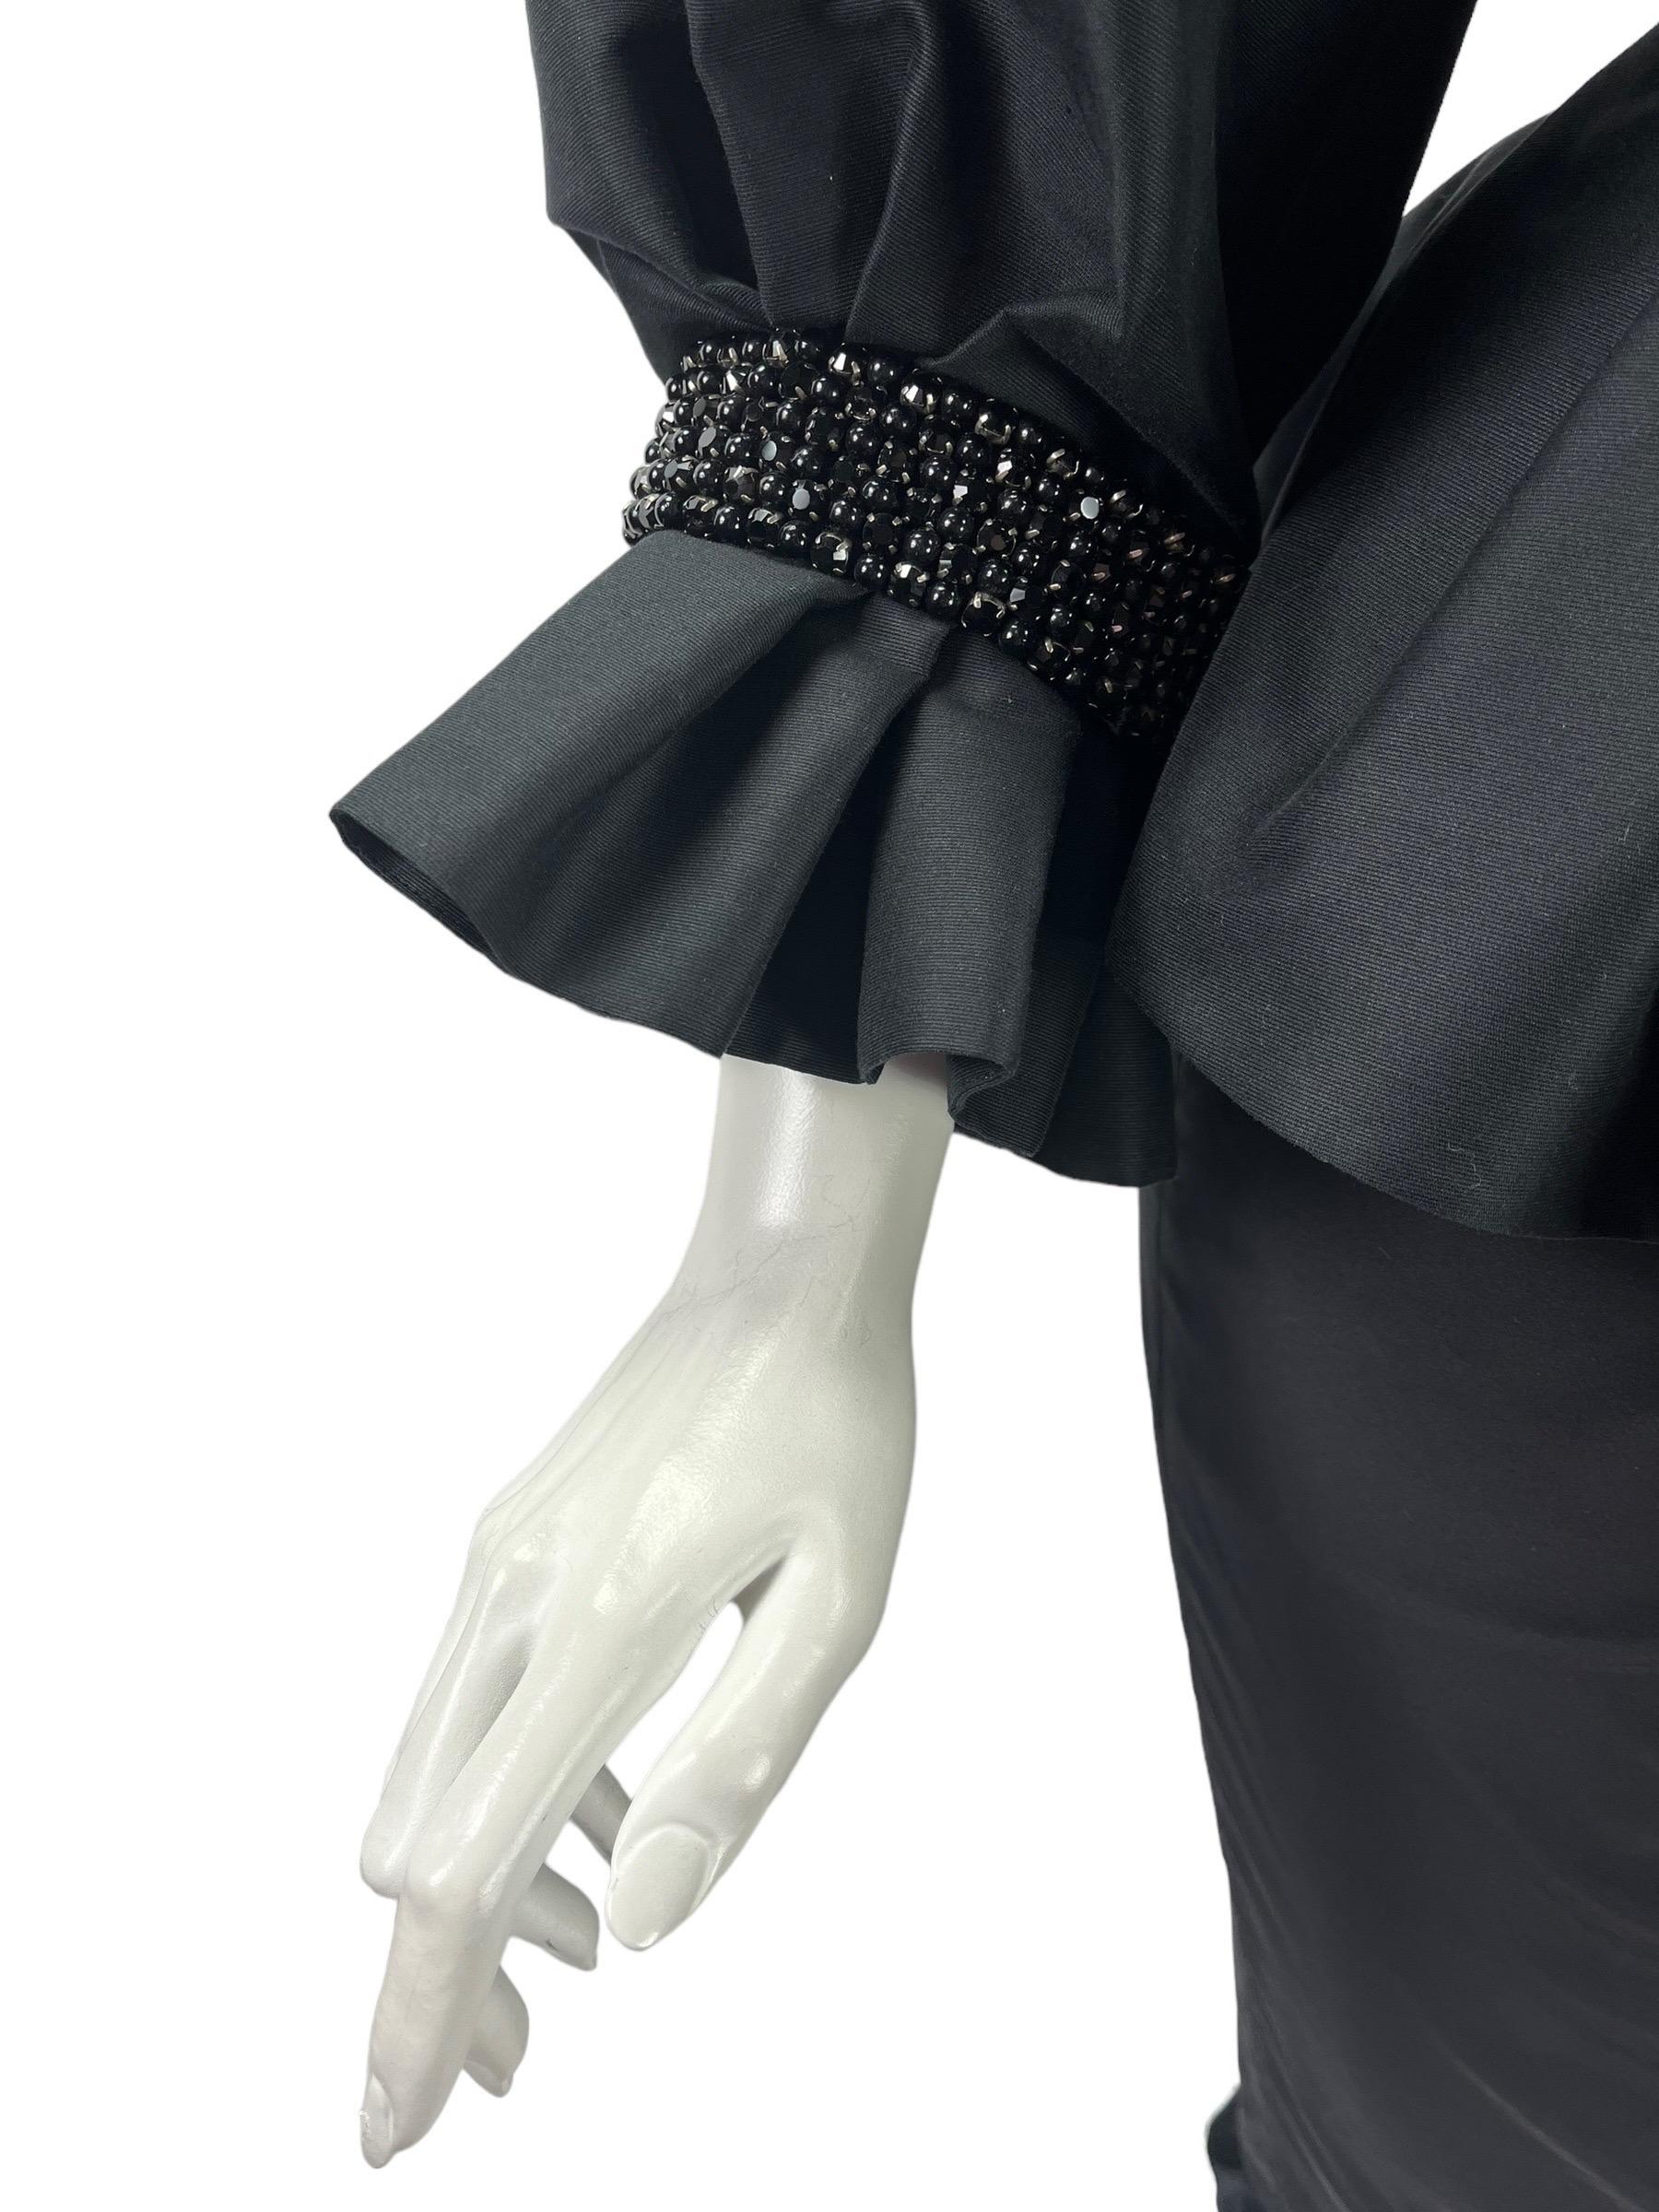 New Vintage F/W 2011 Andrew Gn Crystal embellished black evening blazer jacket For Sale 2